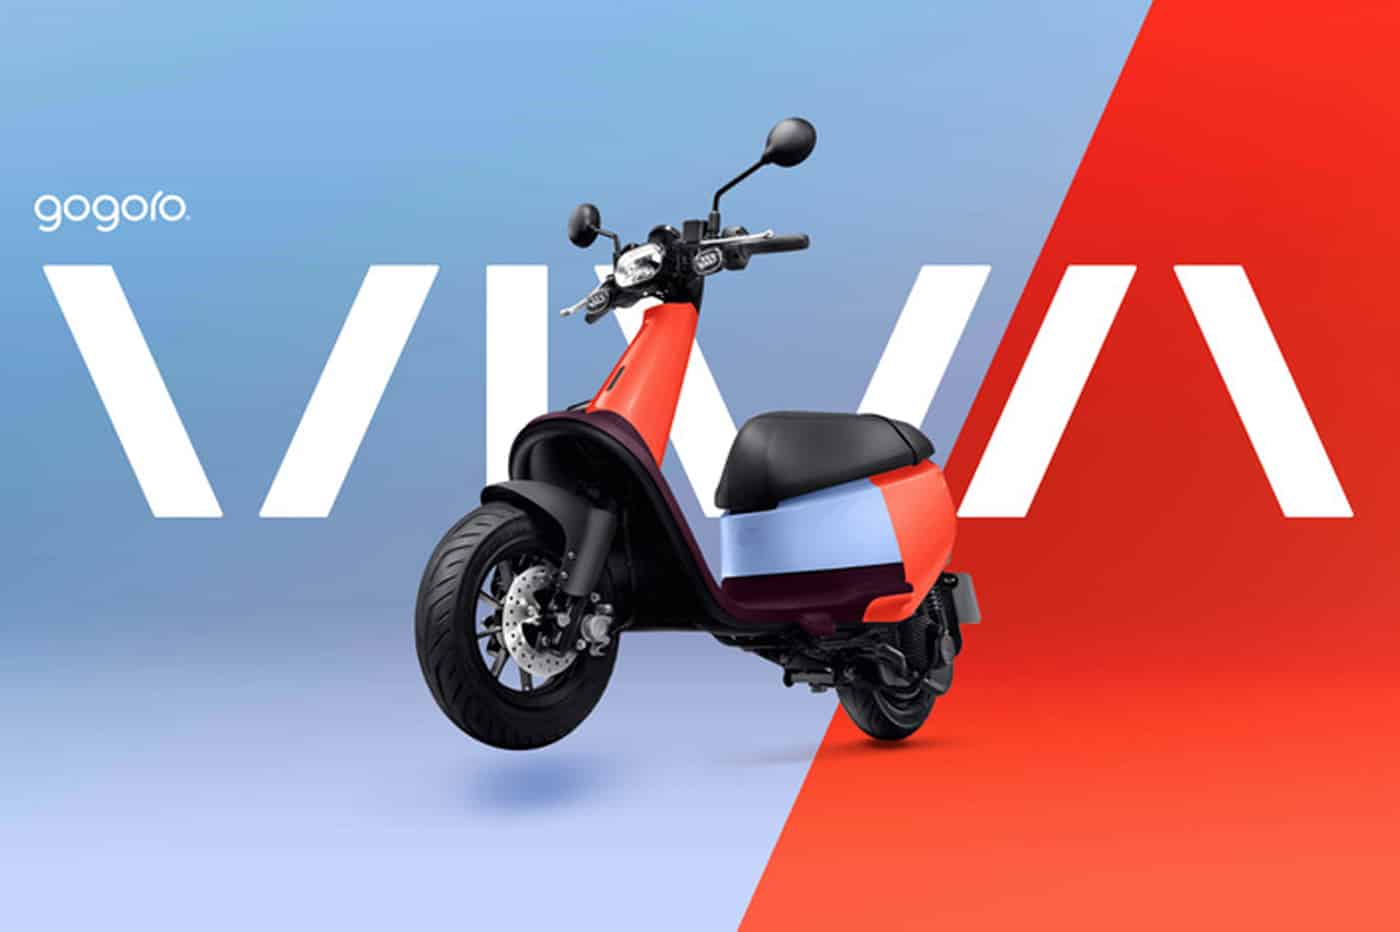 Le scooter électrique Viva de Gogoro